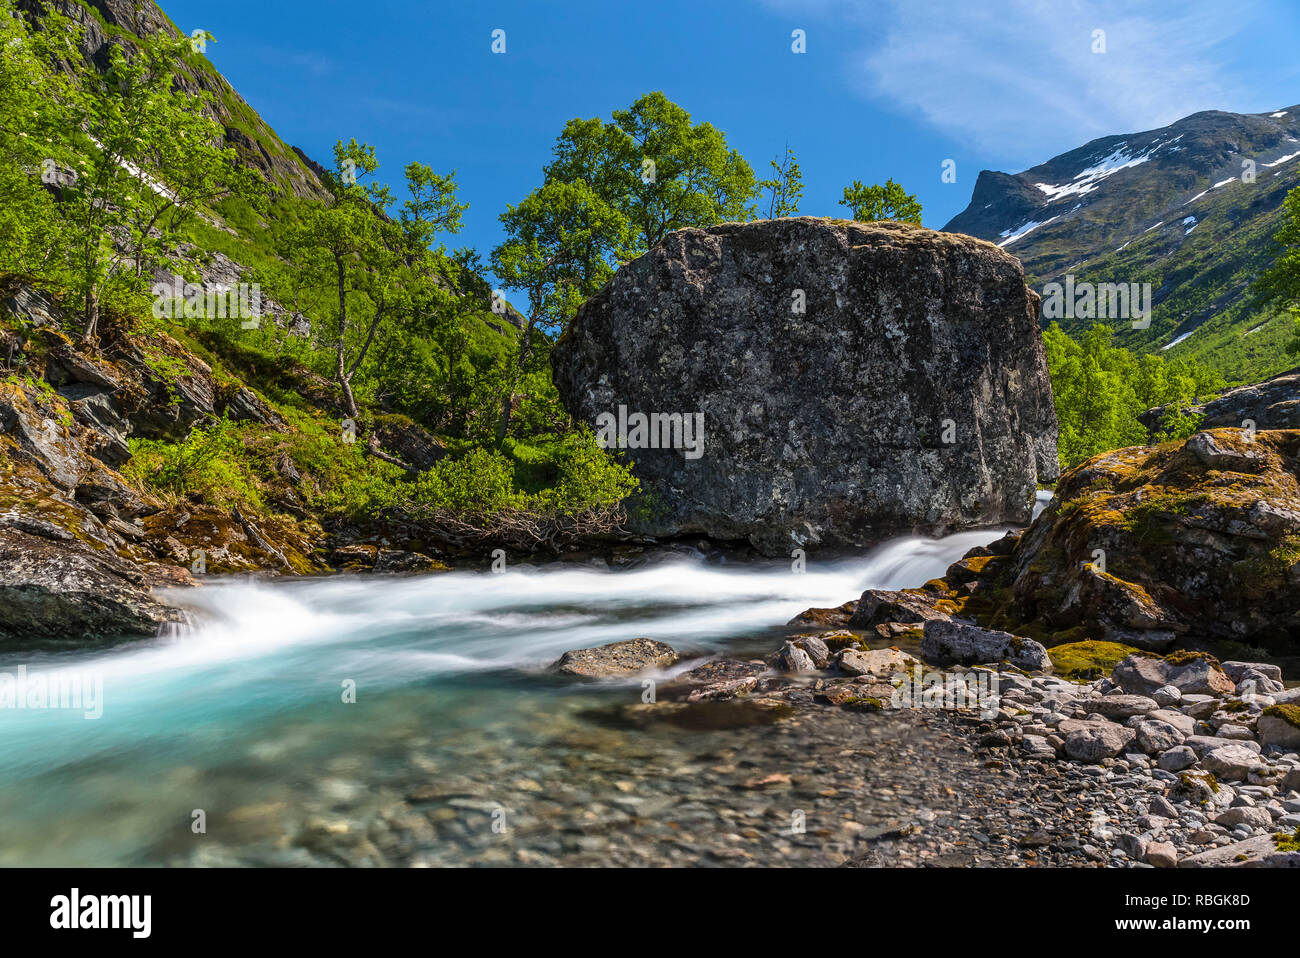 Die klarste Stream in einem Bergtal mit Birken im Frühjahr Farben unter einem blauen Himmel bedeckt. Norwegen, um hjelledalen. Stockfoto